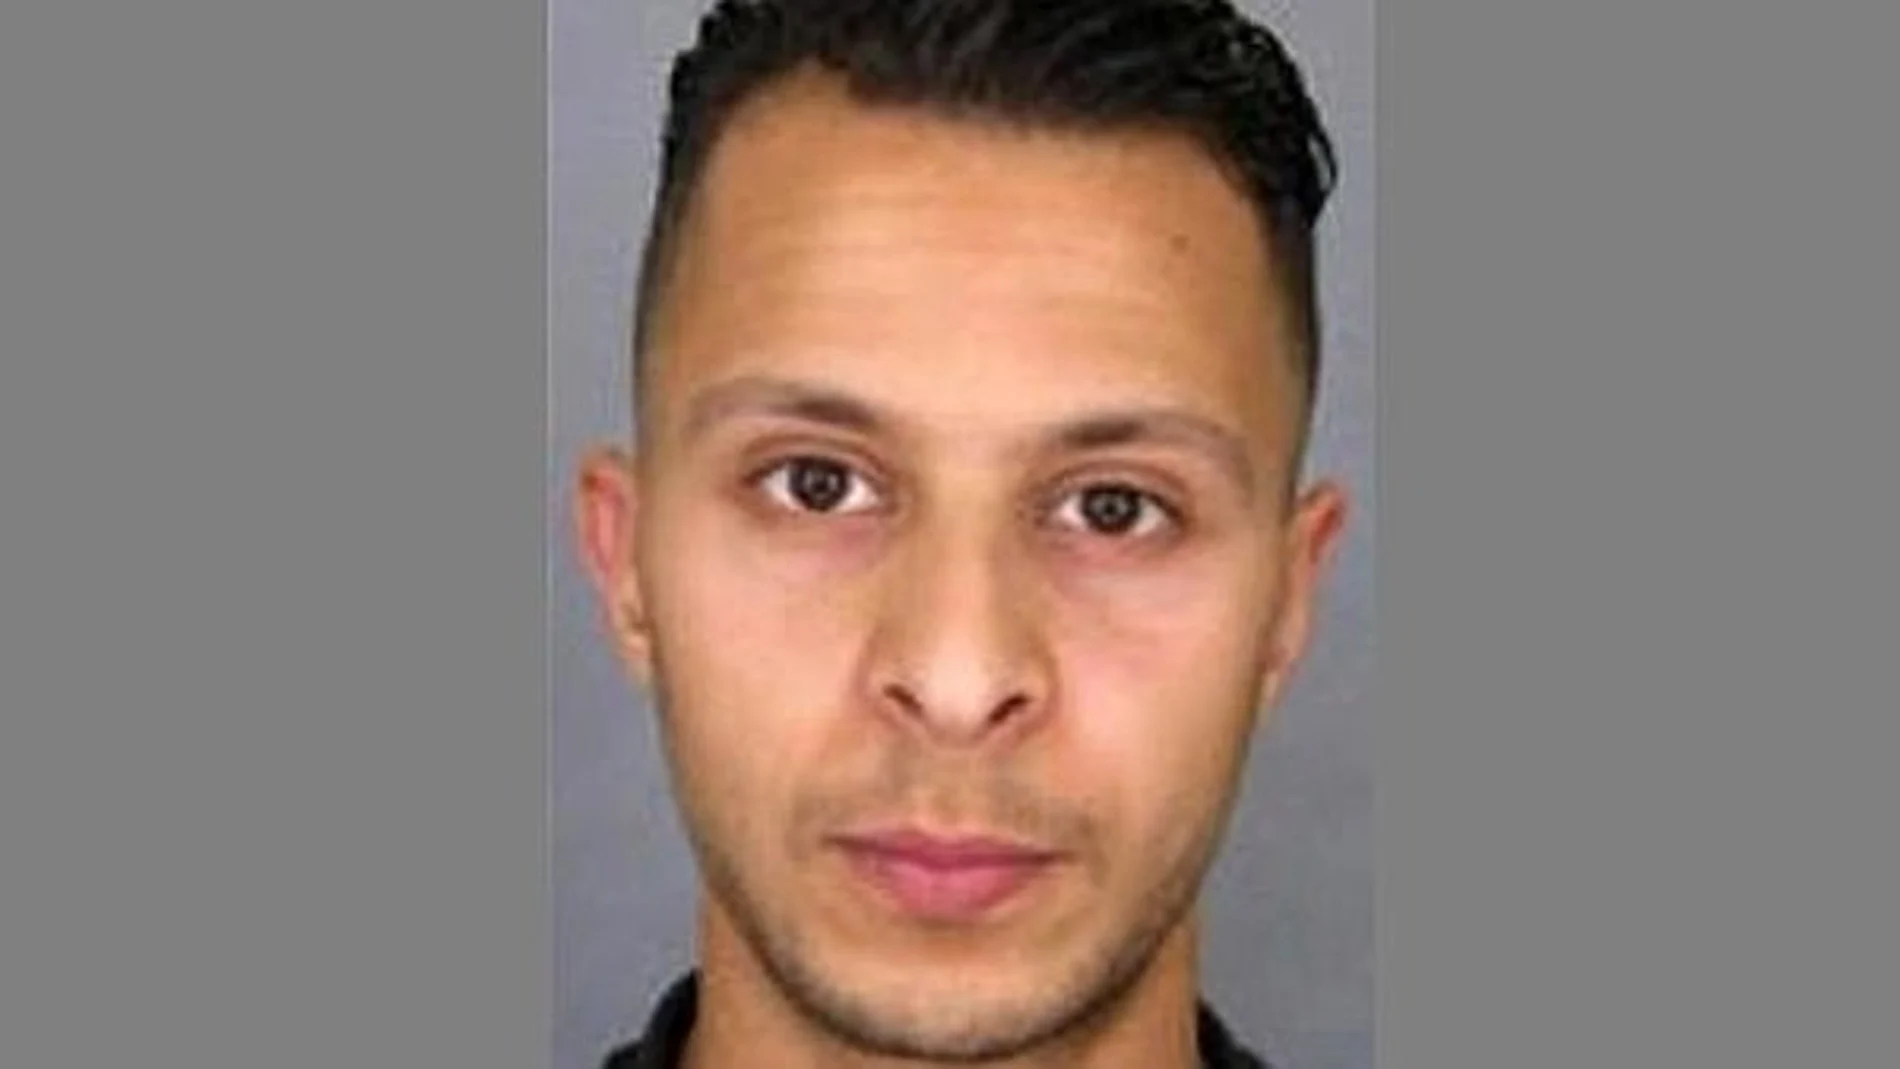 El terrorista Salah Abdeslam, buscado por los atentados de París